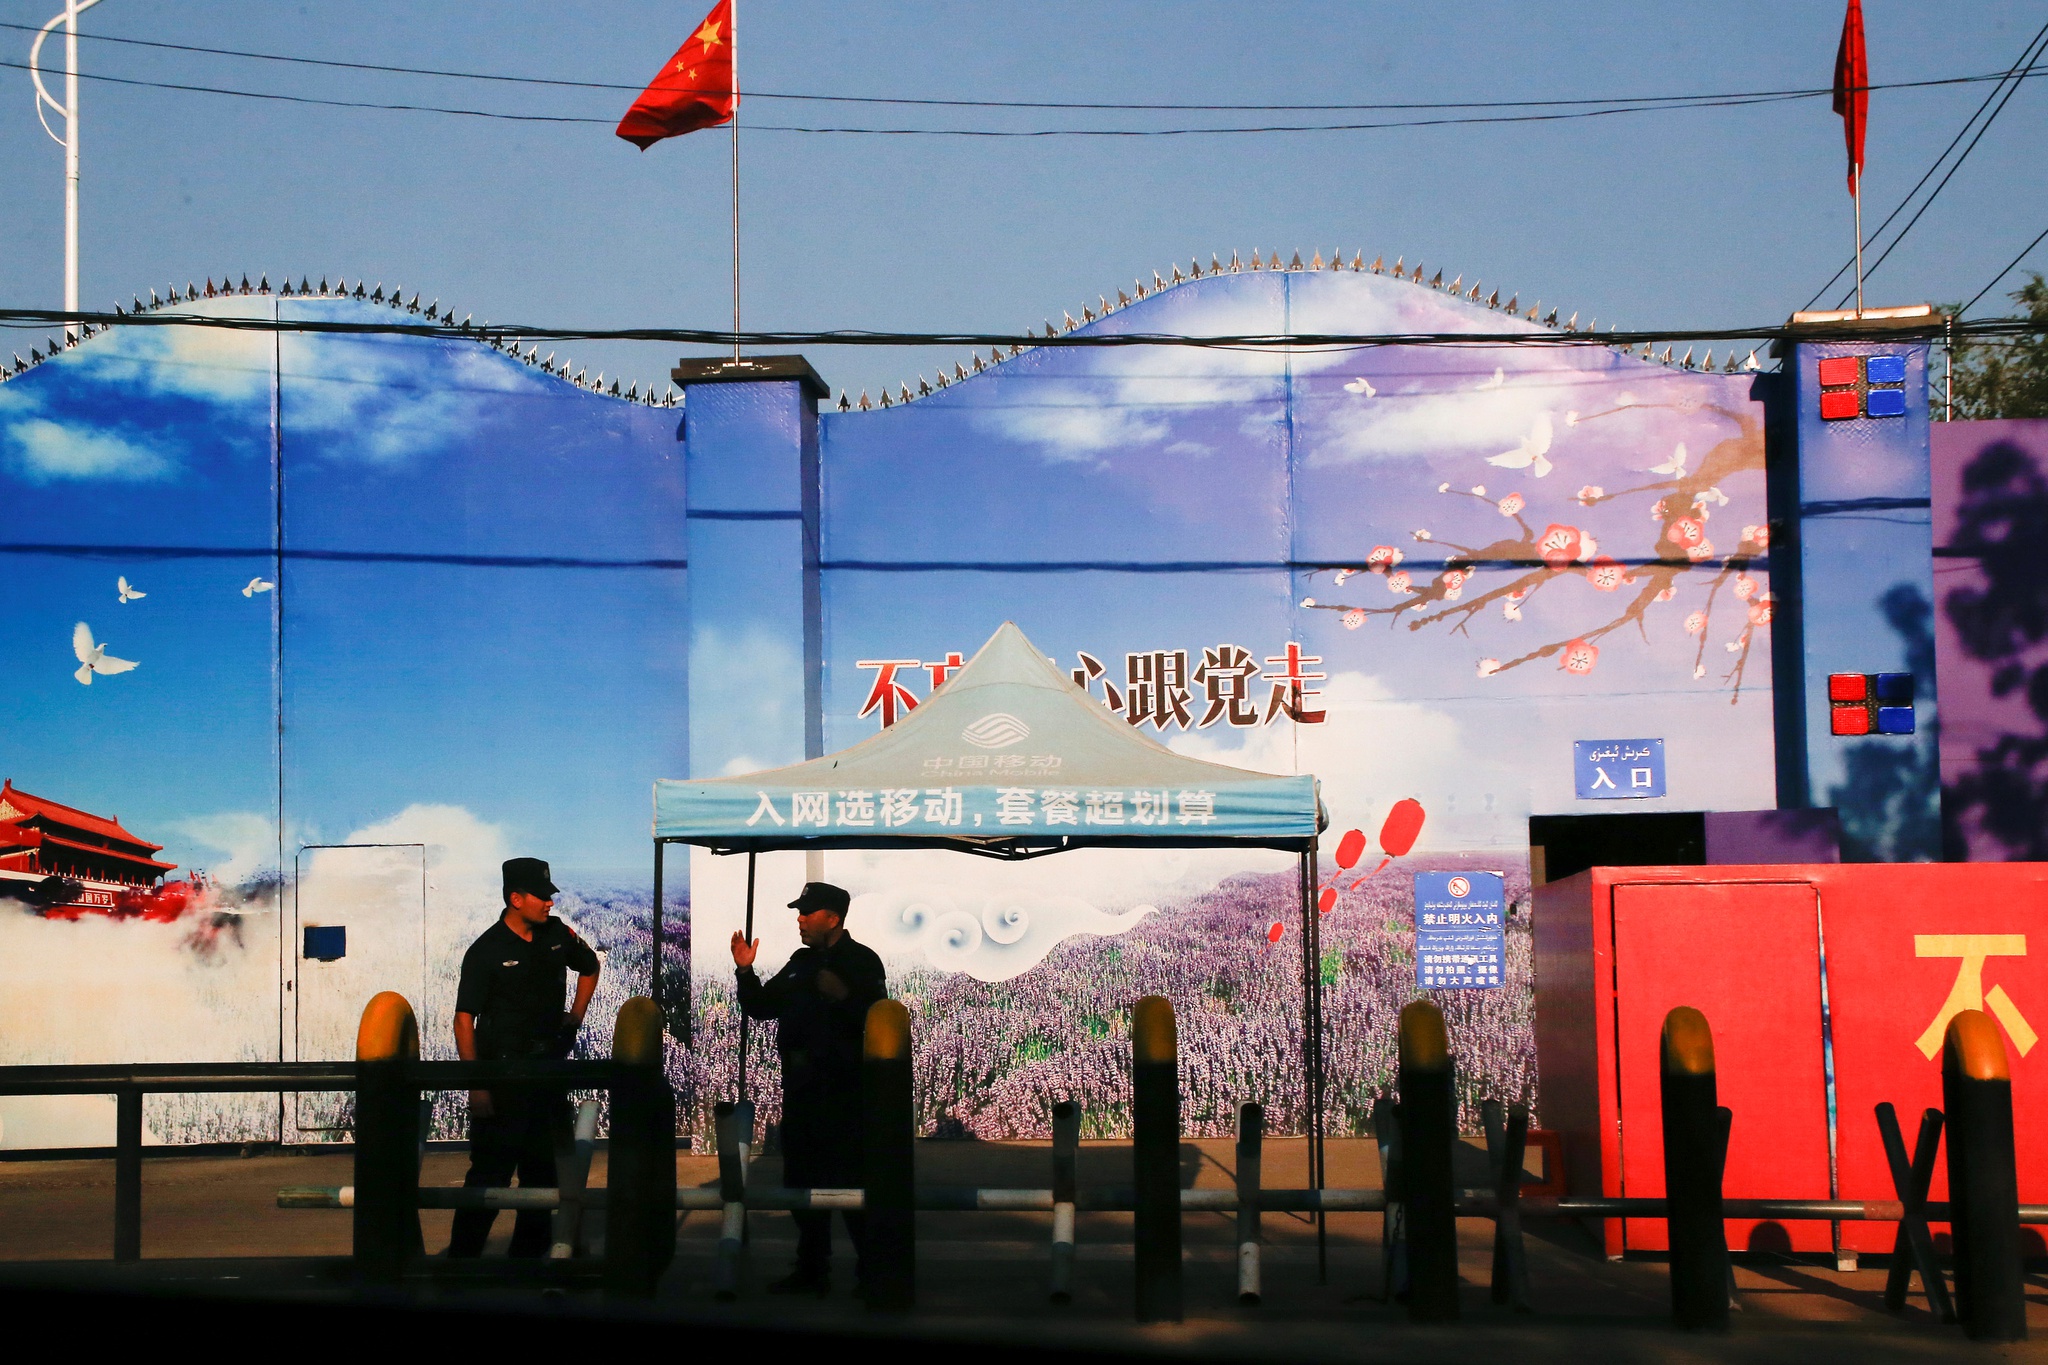 China publica novas regras para “proibir o extremismo religioso